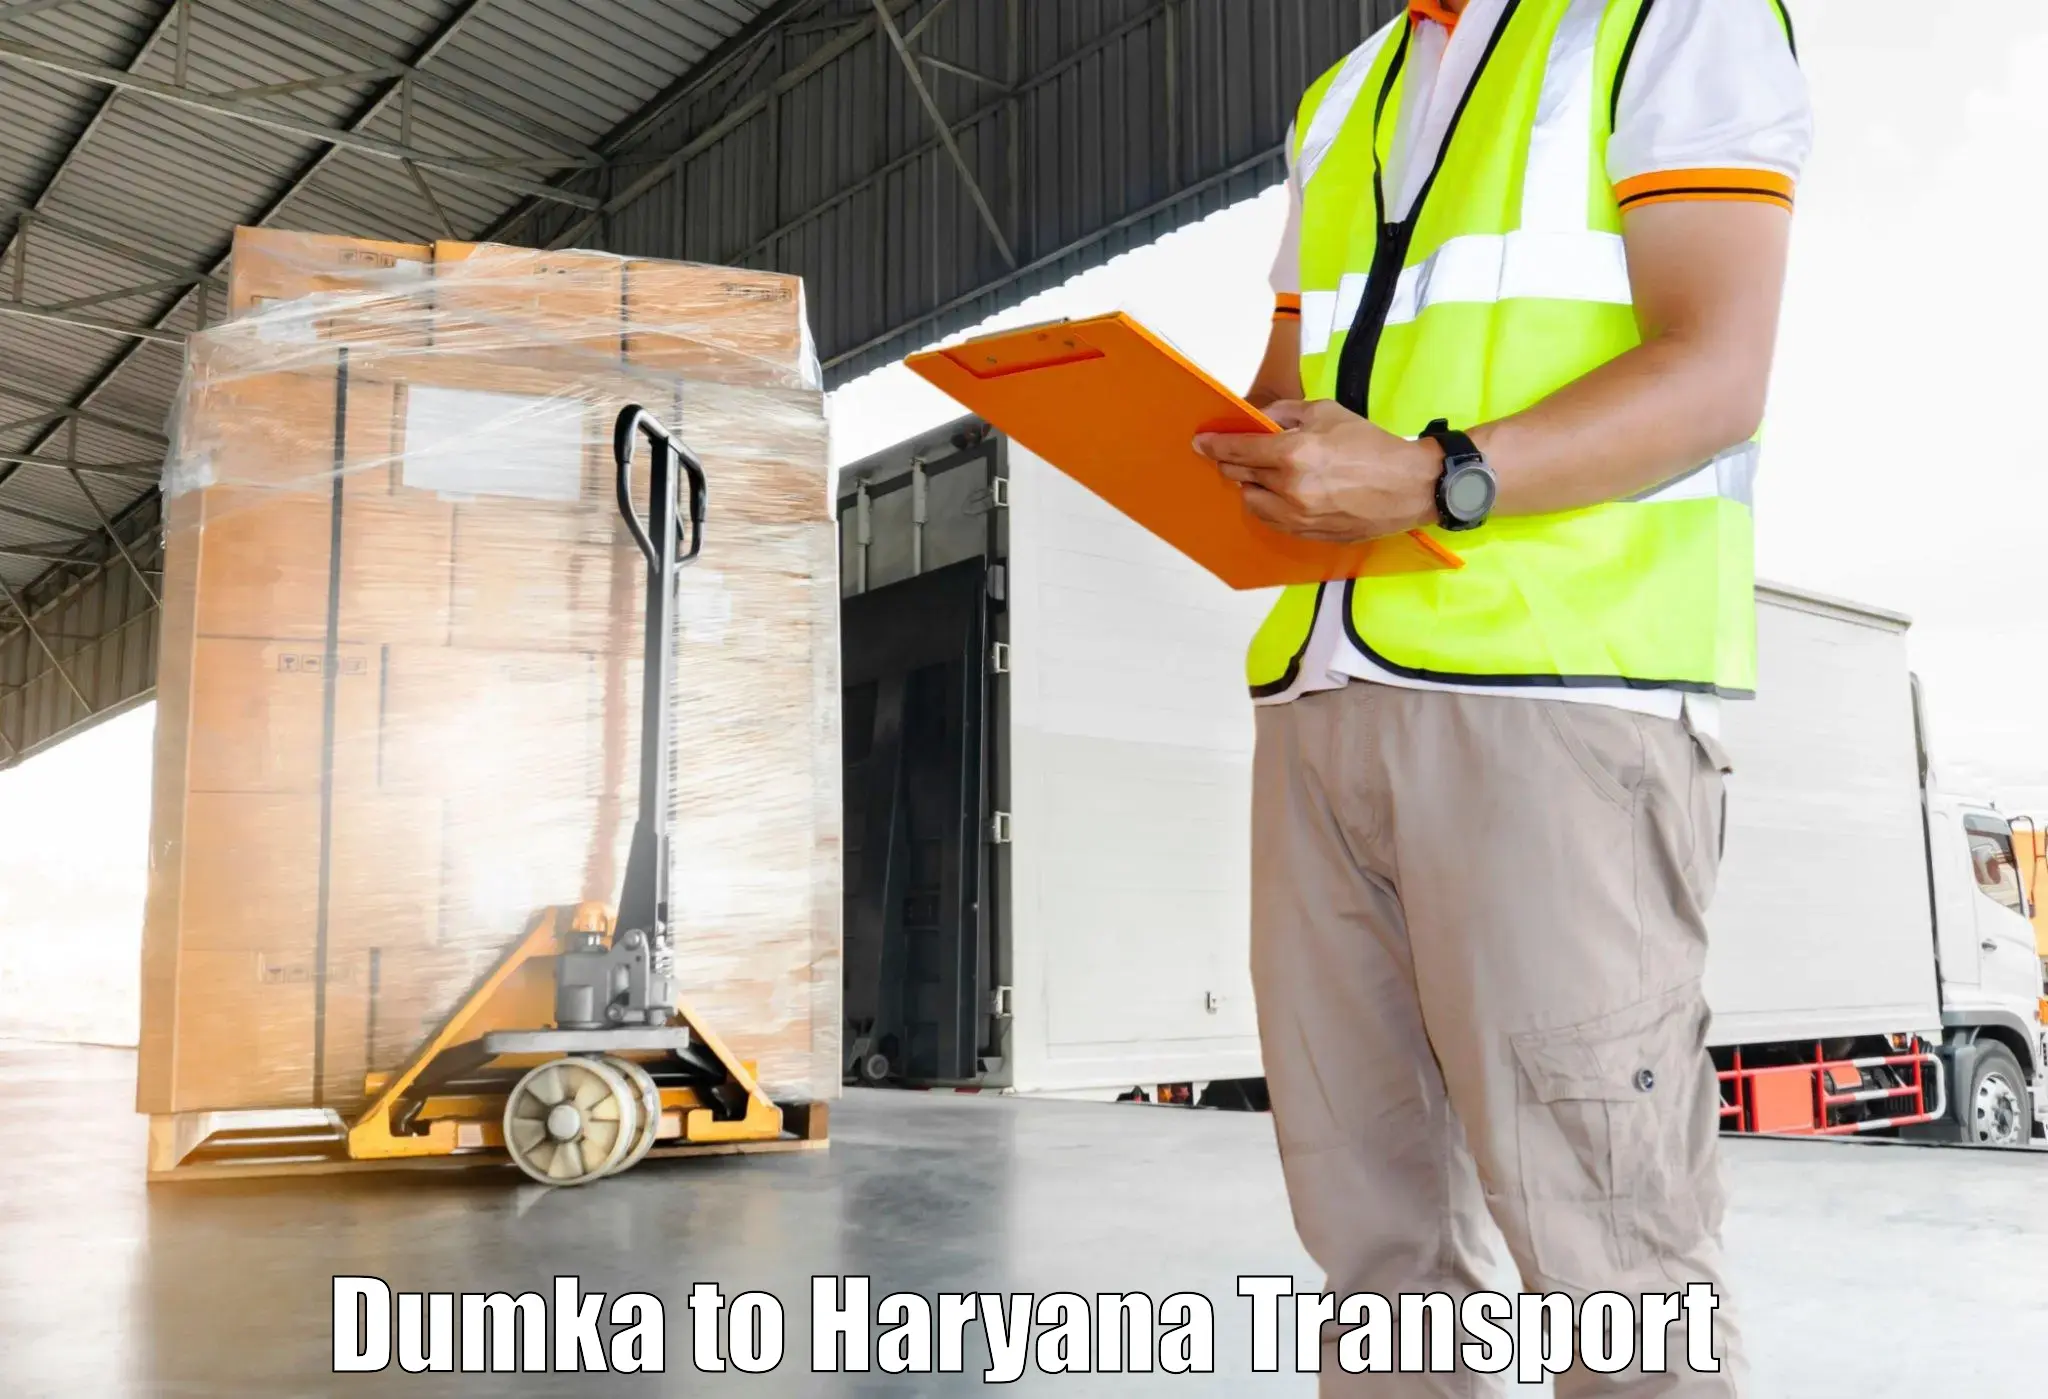 Furniture transport service Dumka to Odhan